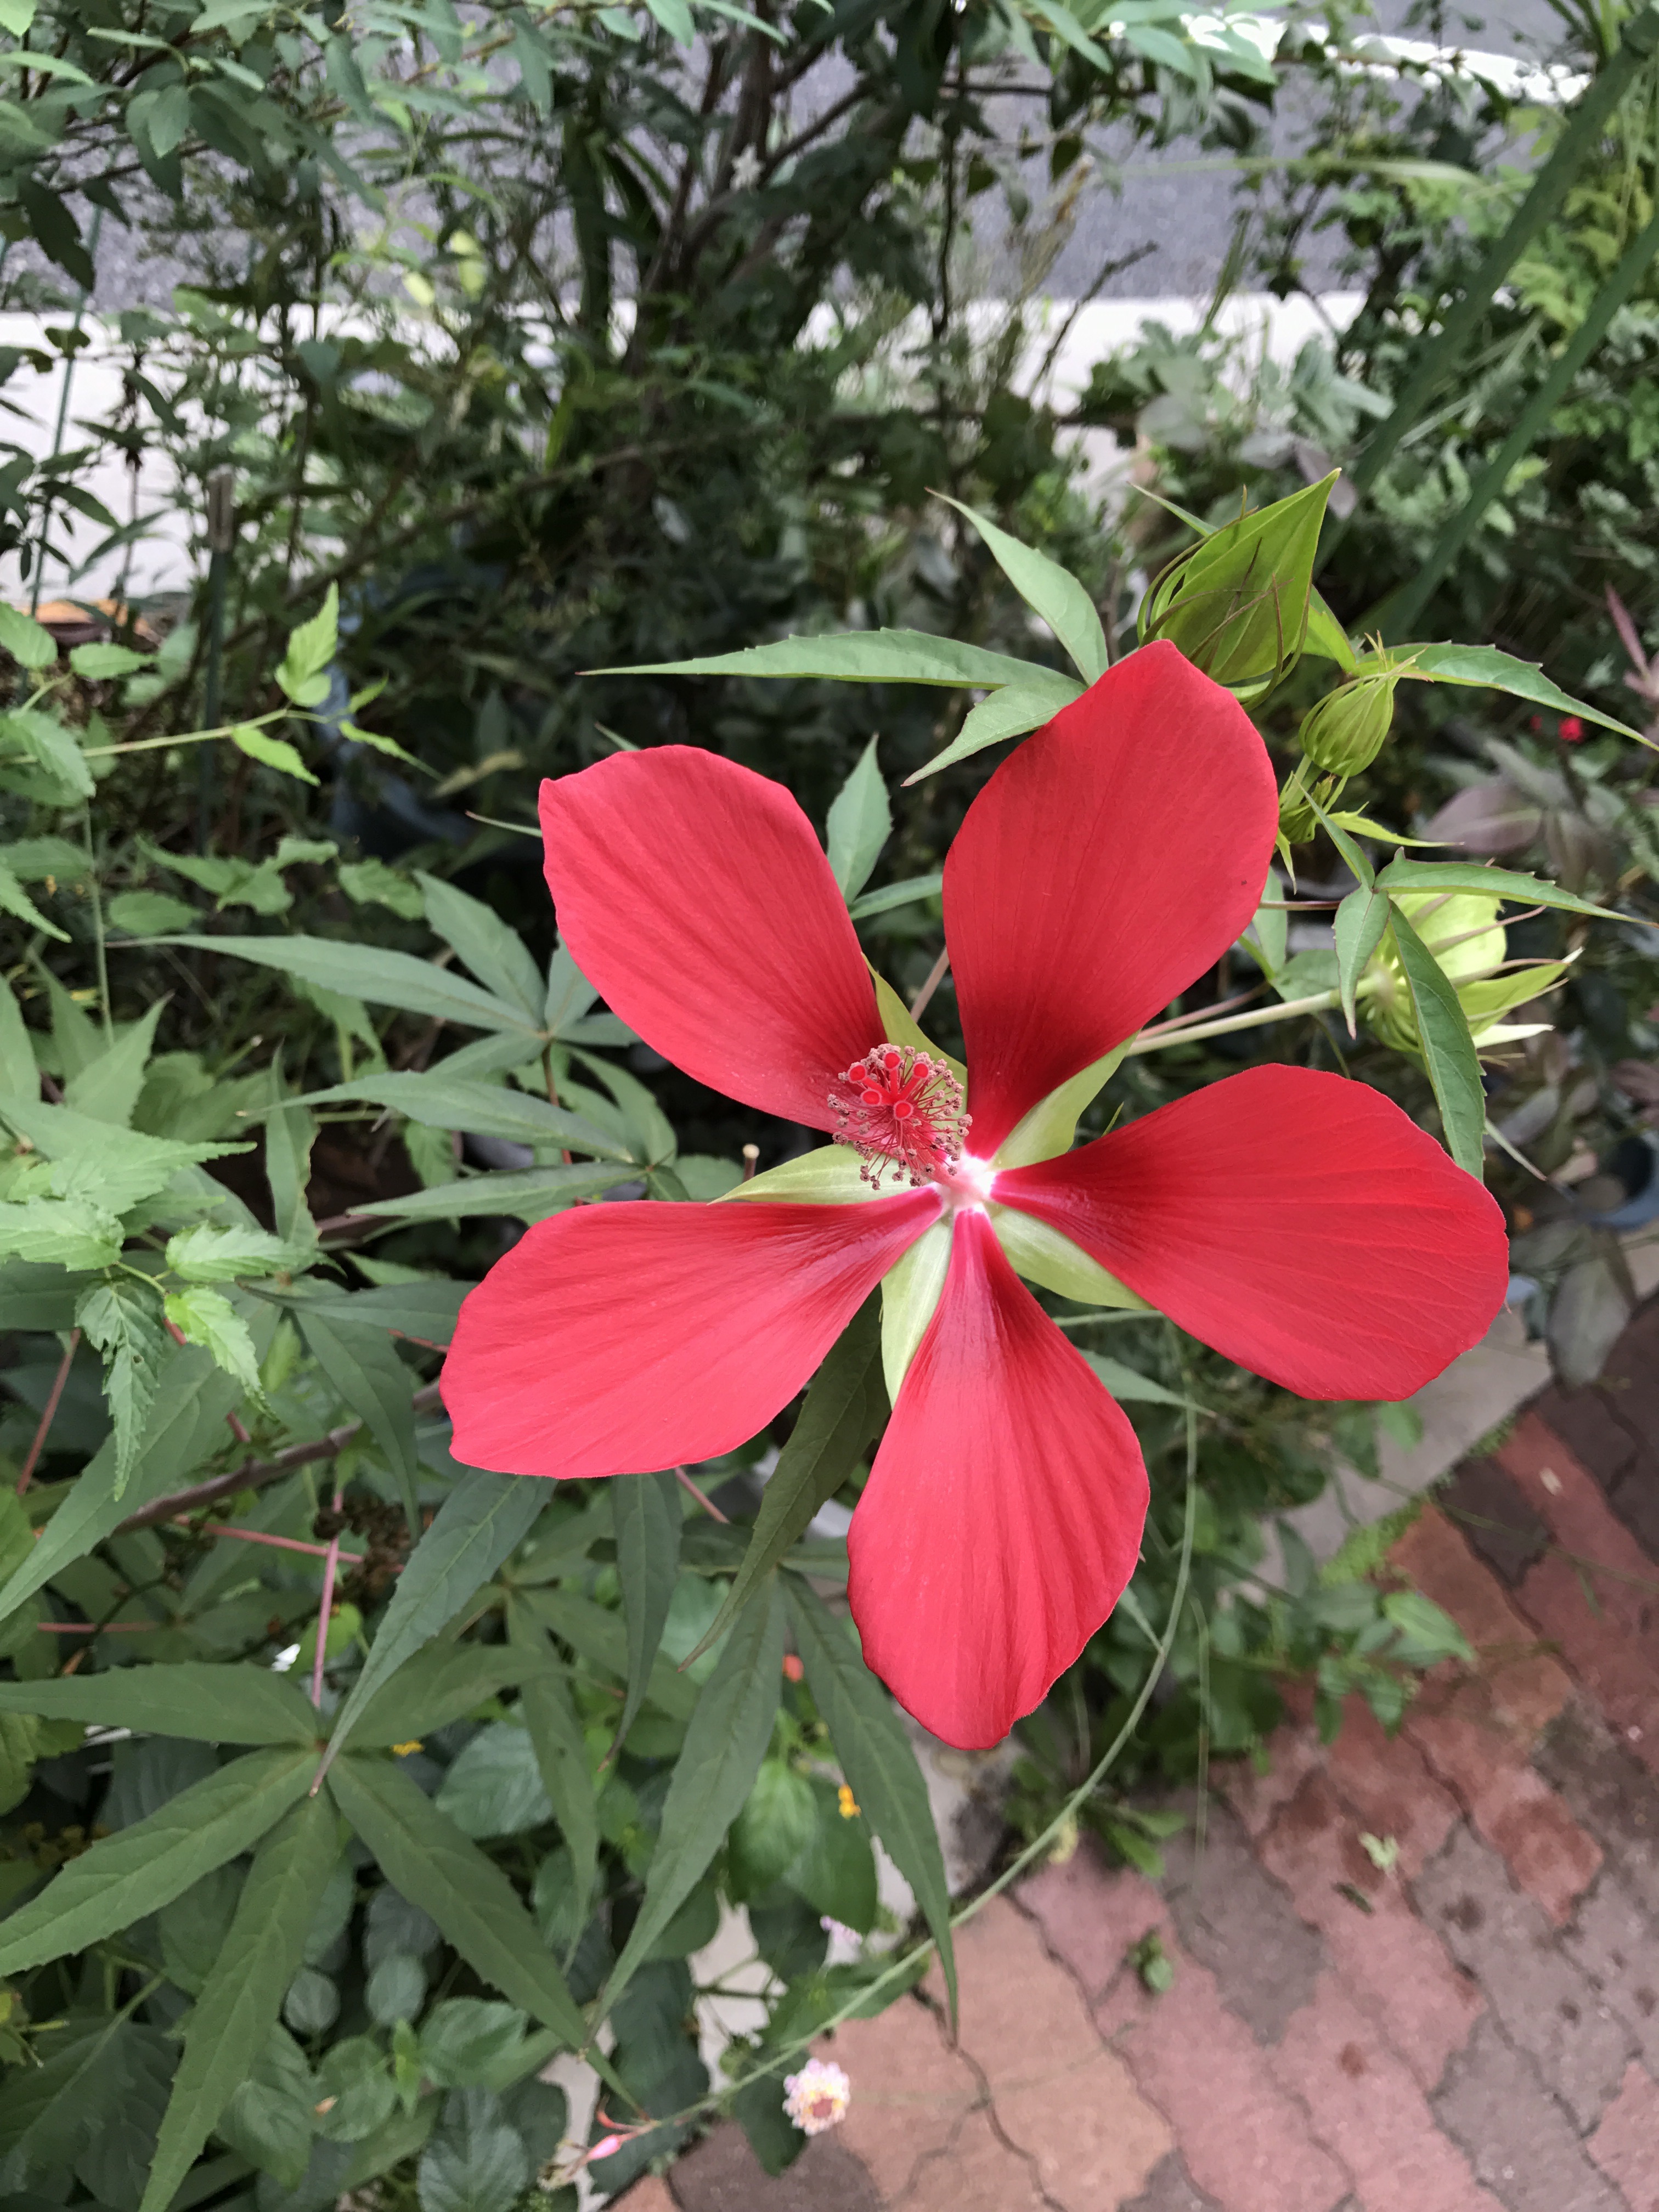 モミジアオイ 花撮影技術 植物園紹介 花のブログ